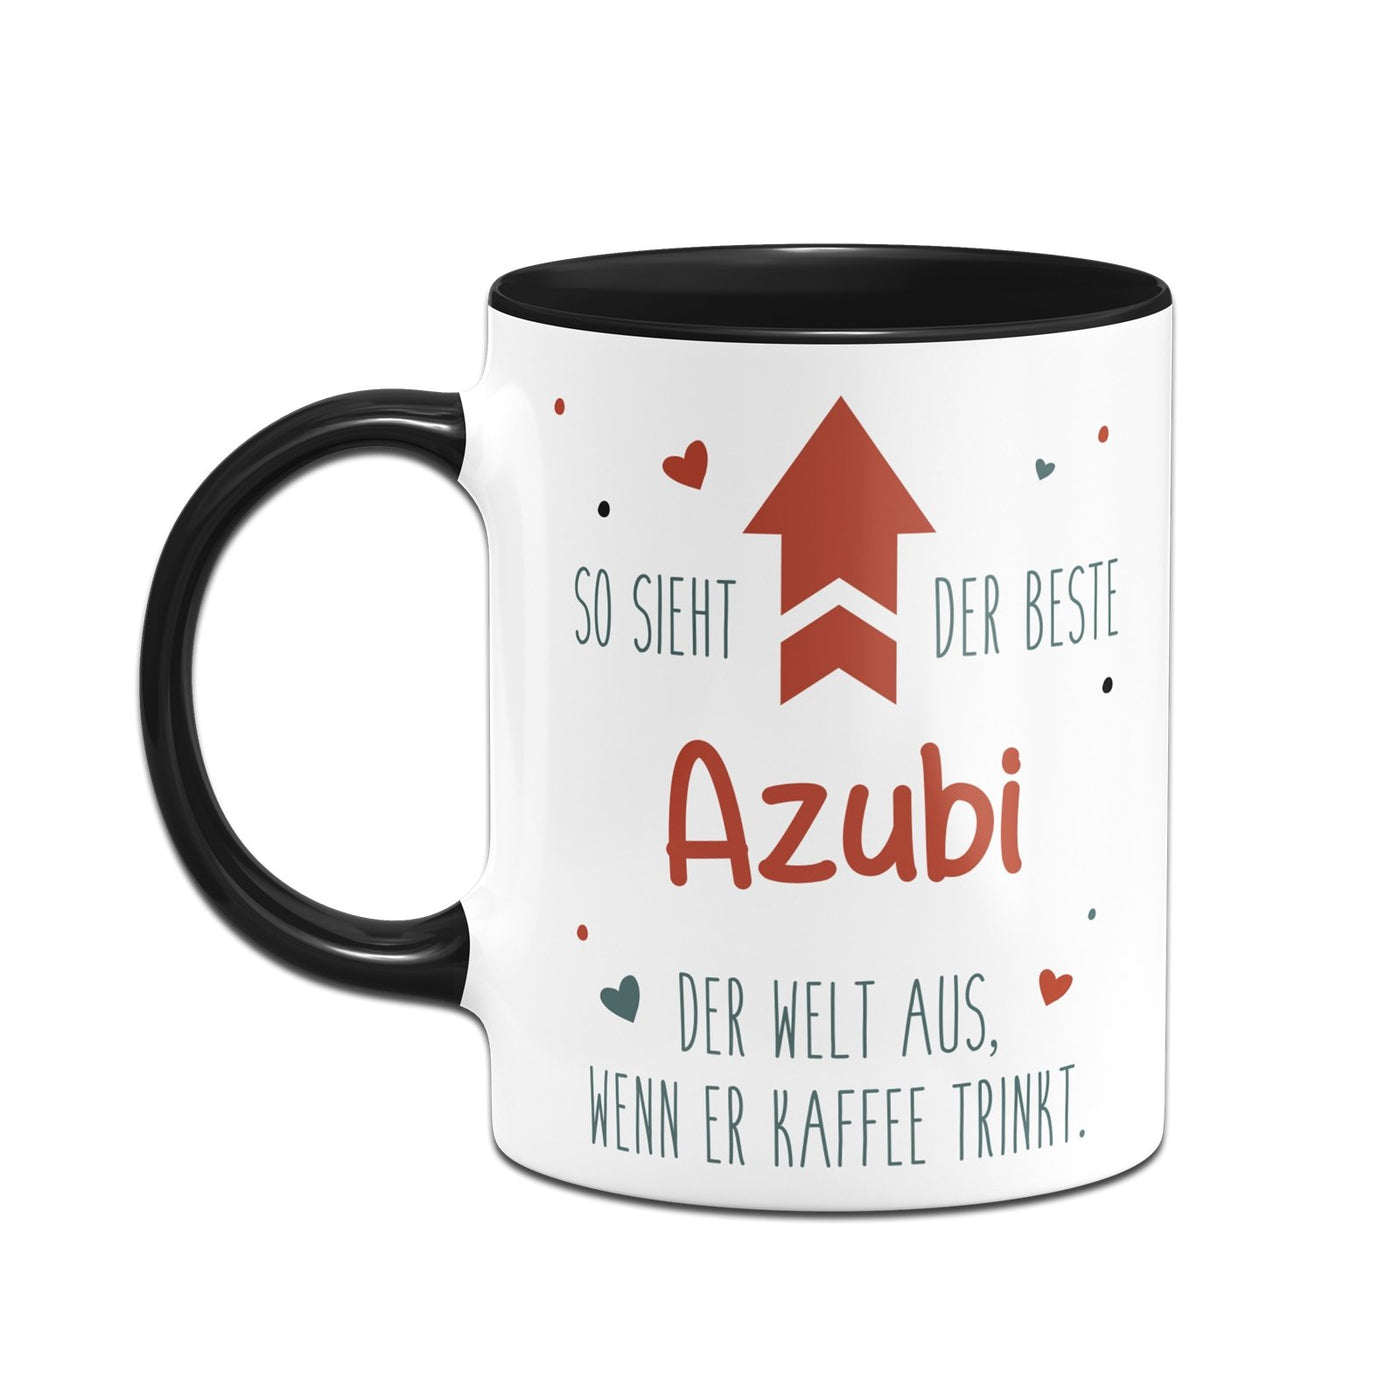 Bild: Tasse - So sieht der beste Azubi der Welt aus, wenn er Kaffee trinkt. Geschenkidee